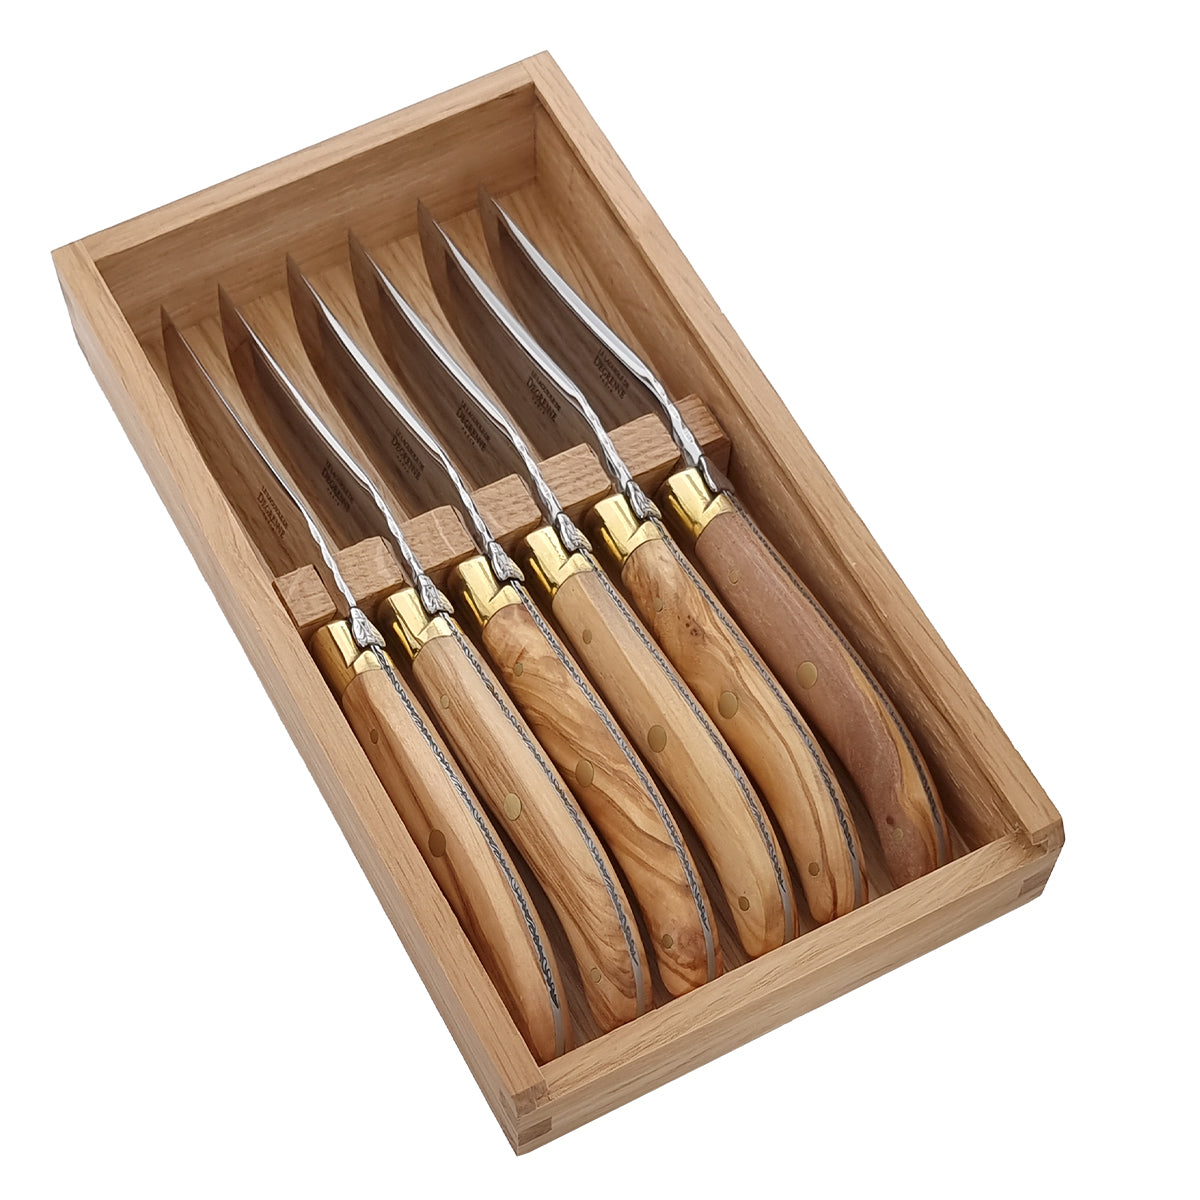 LAGUIOLE KNIVES Set of 6 steak knives olive wood – DEGRENNE